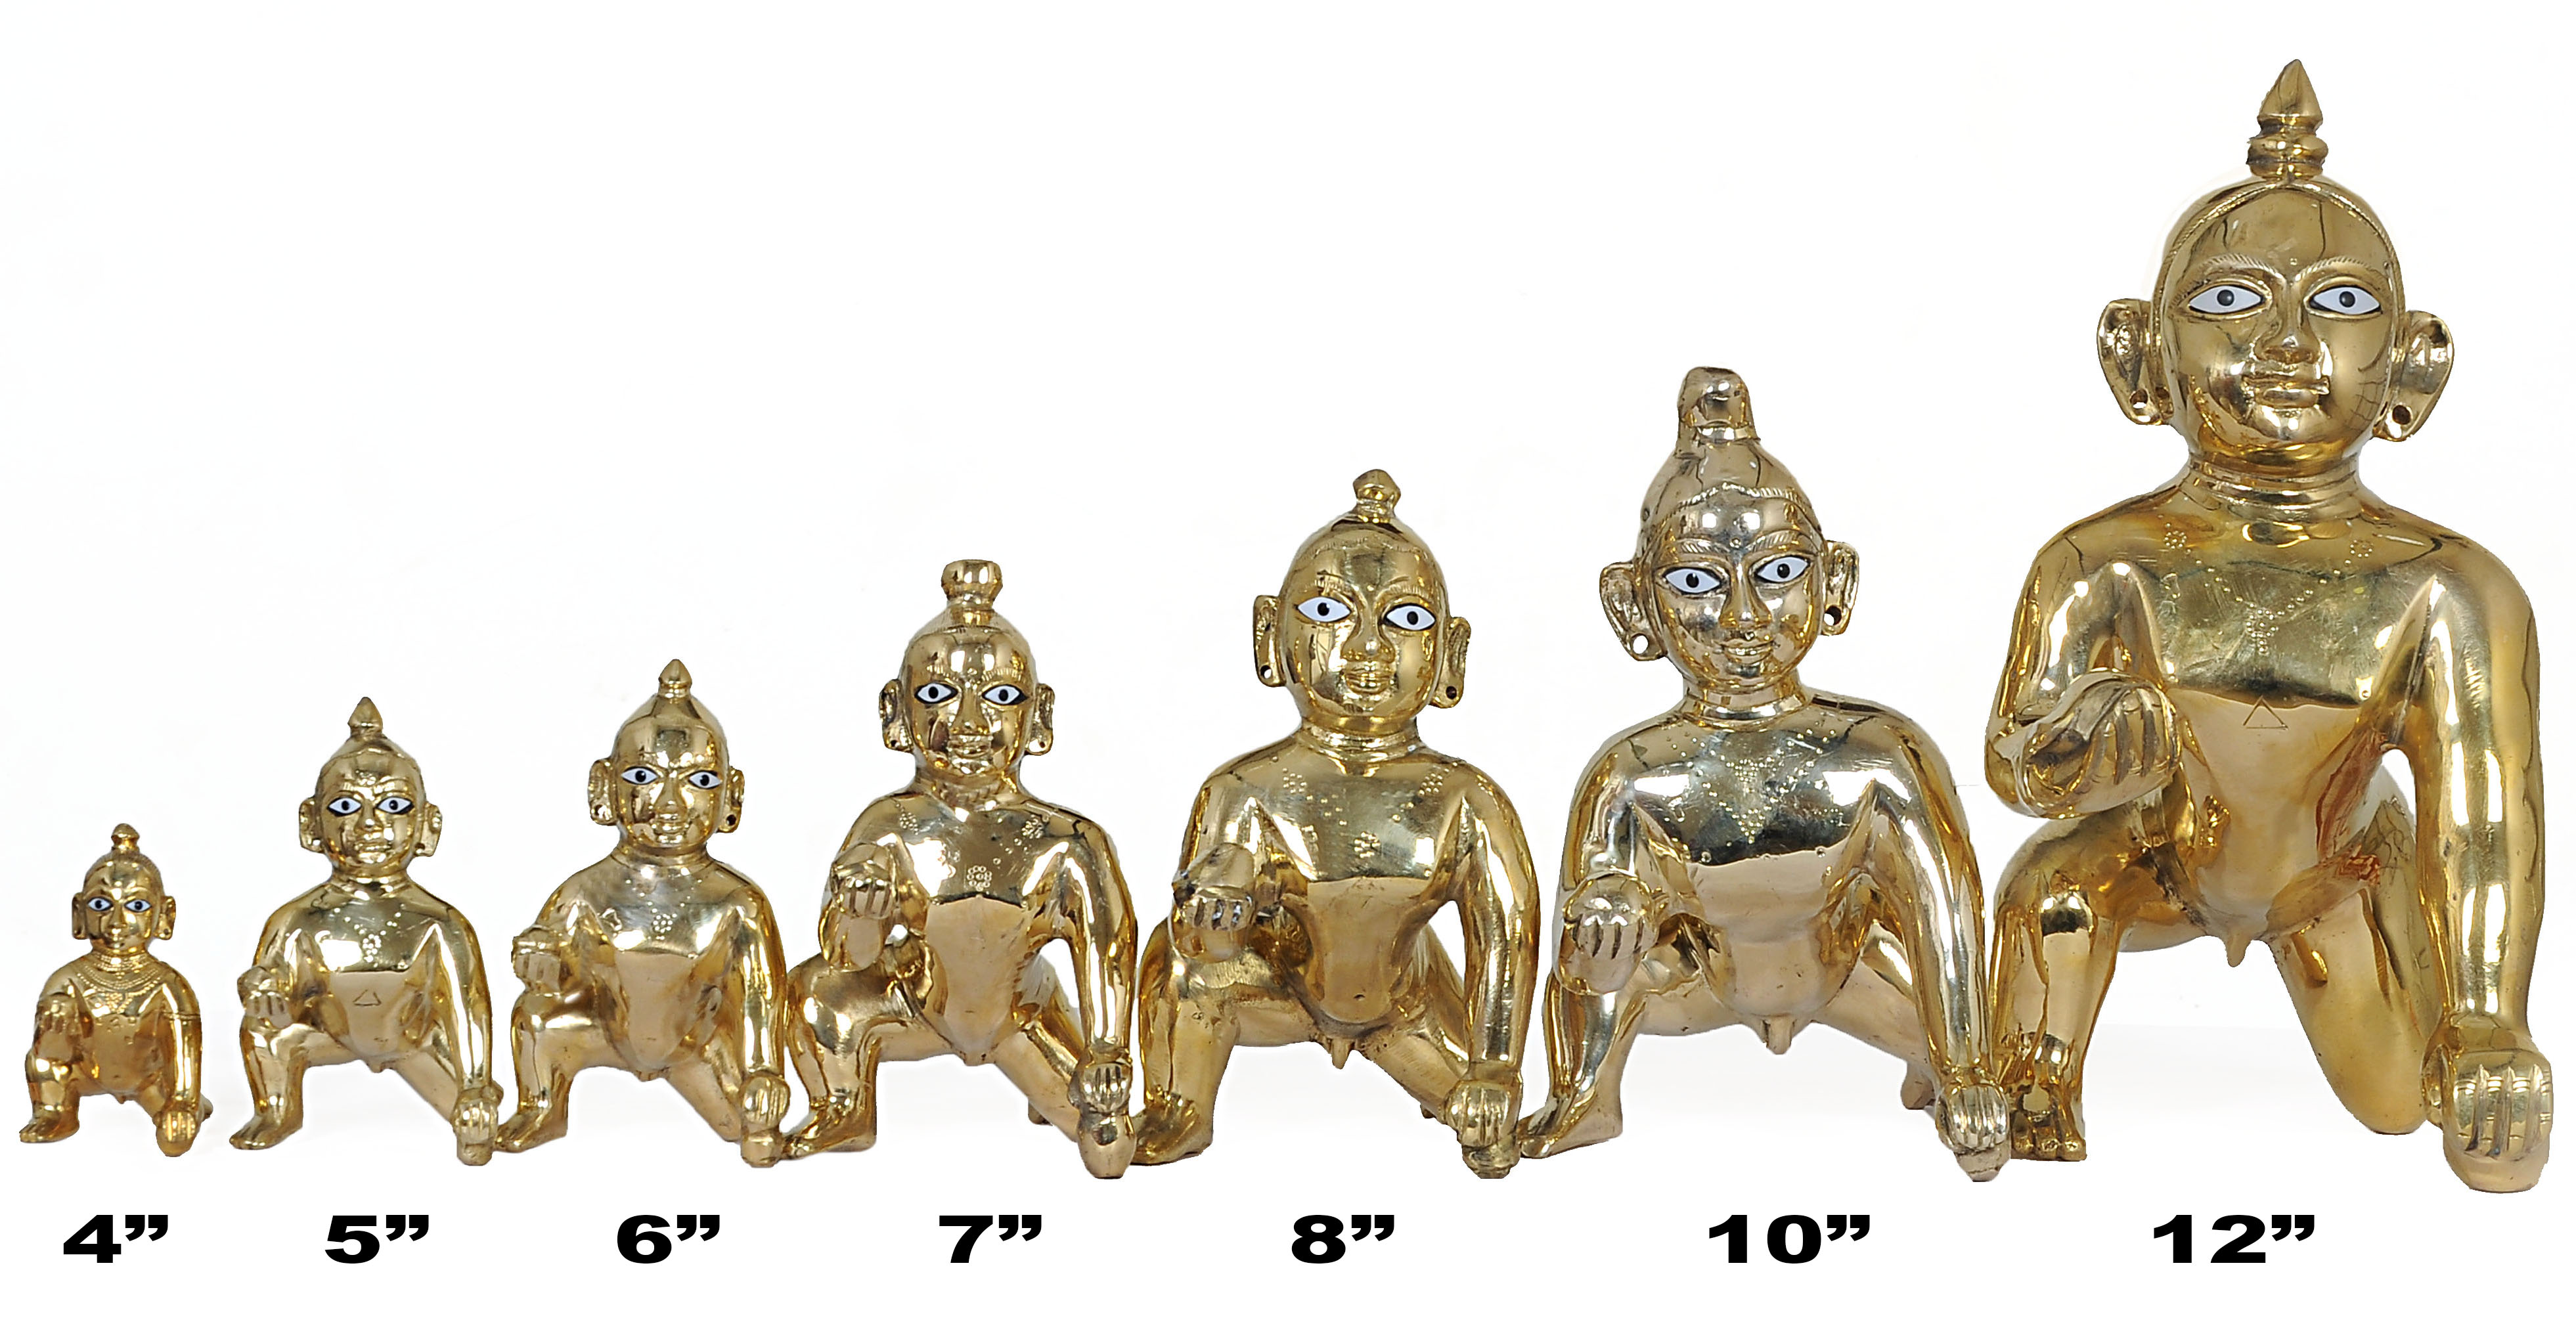 Laddu Gopal deities many sizes